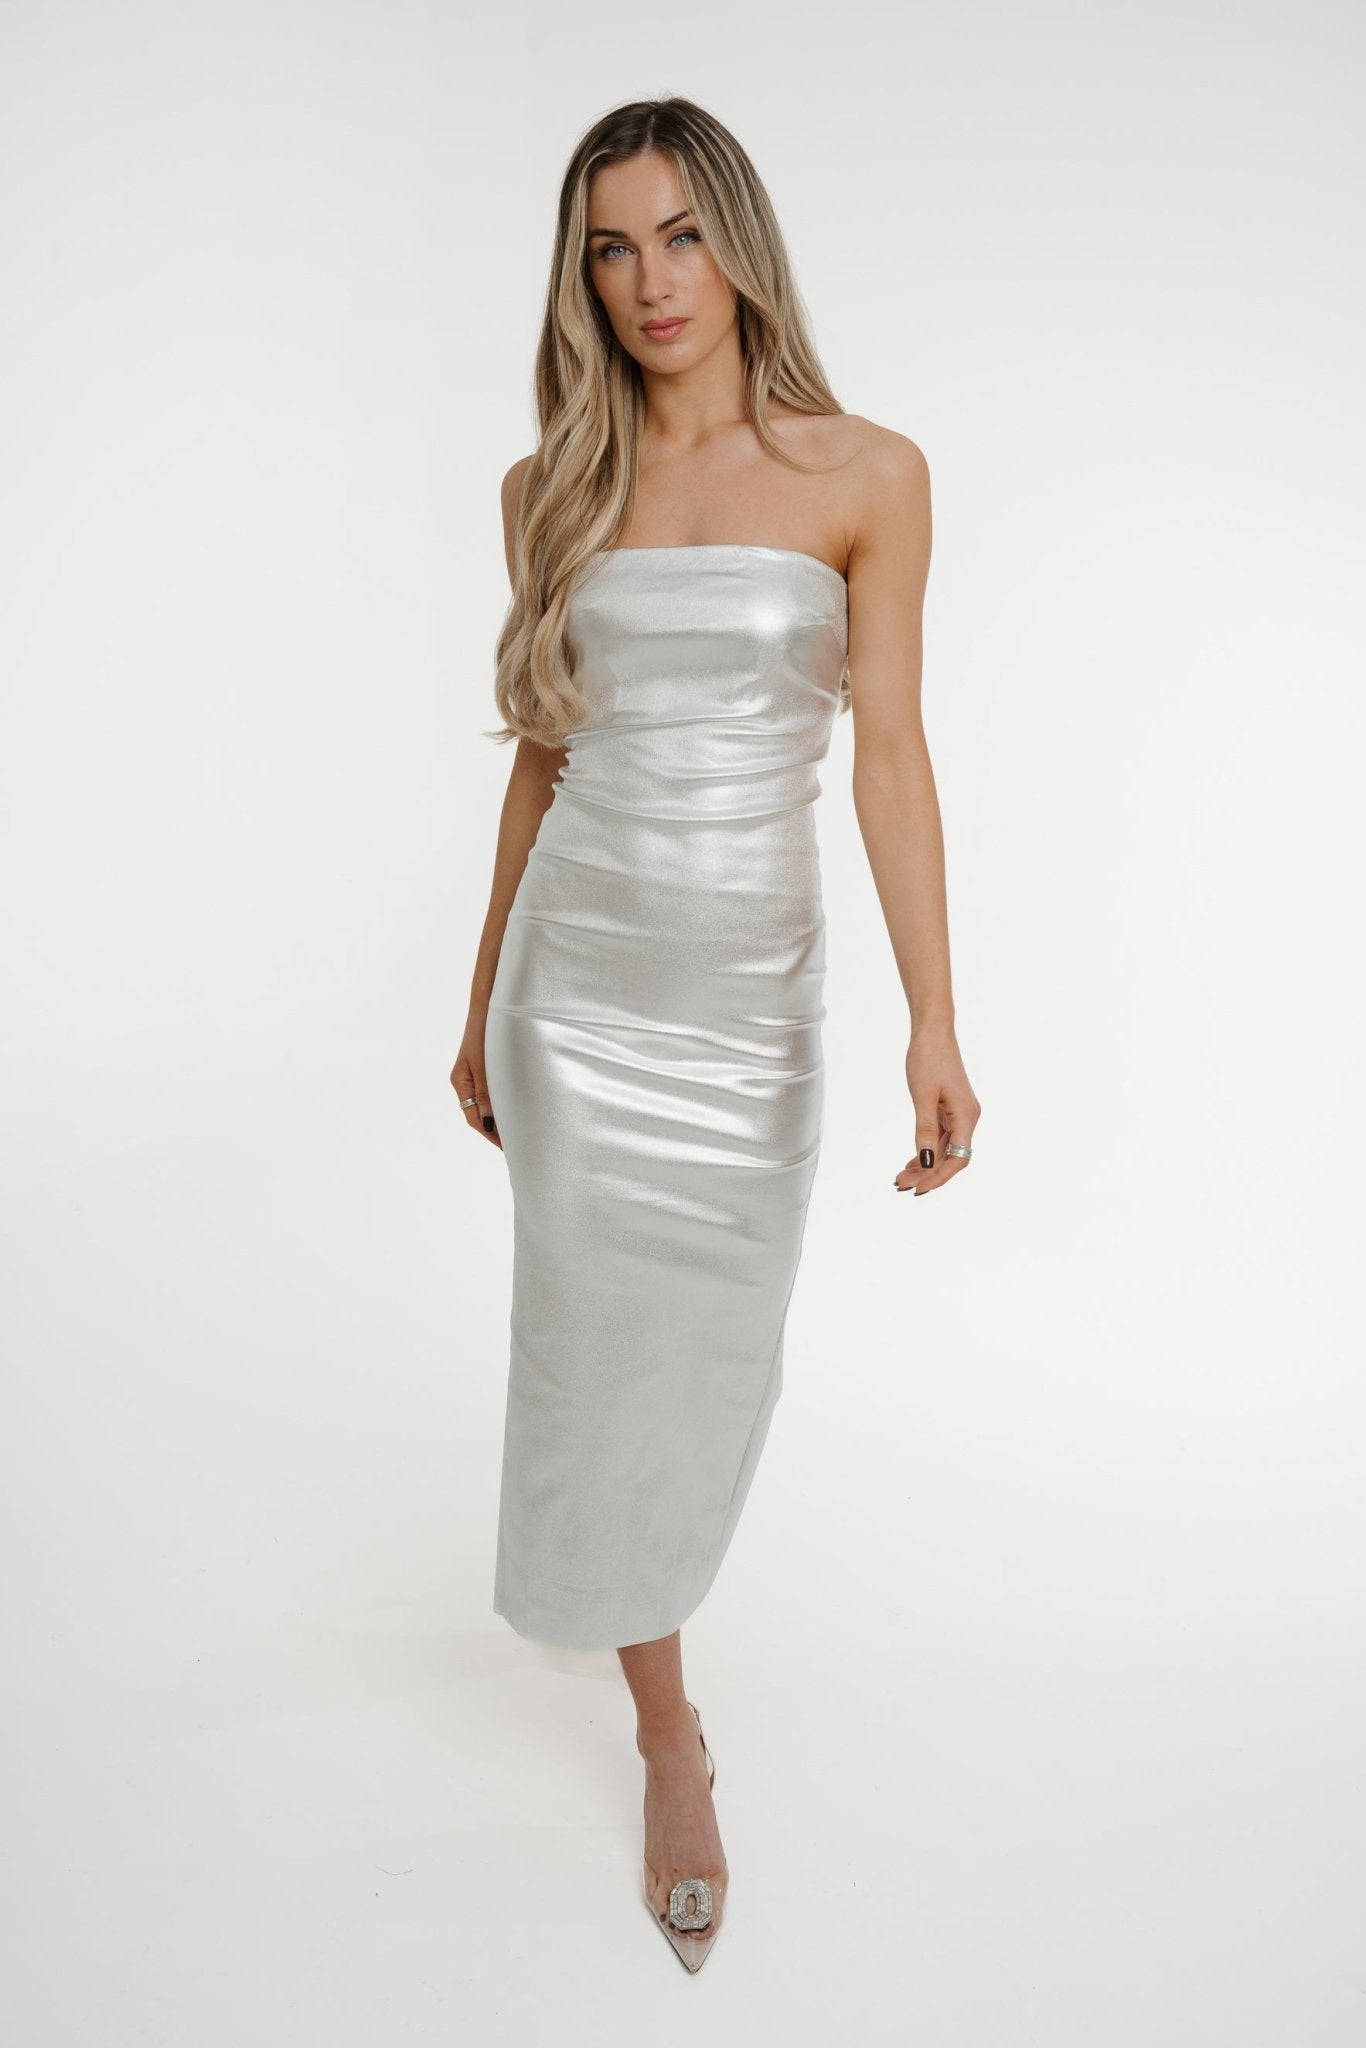 Iris Metallic Bandeau Dress In Silver - The Walk in Wardrobe